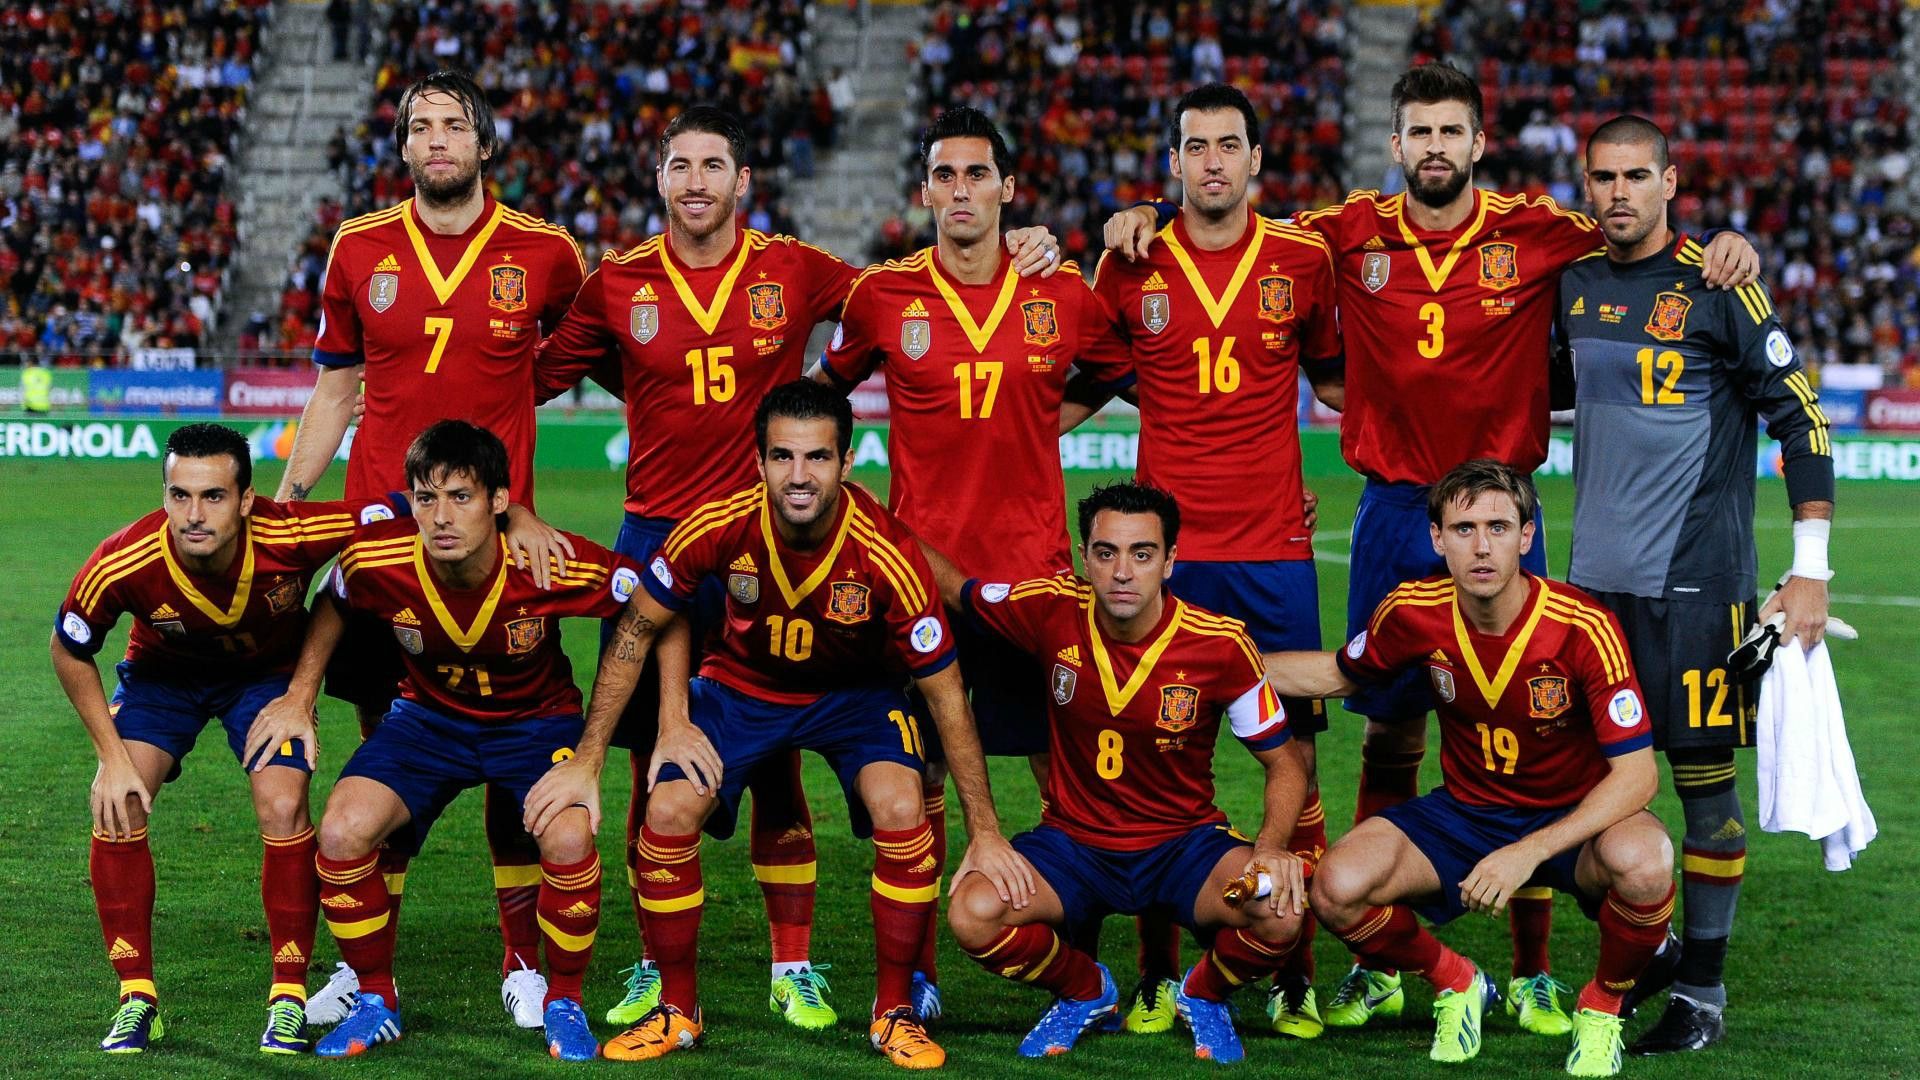 Spain National Football Team #8